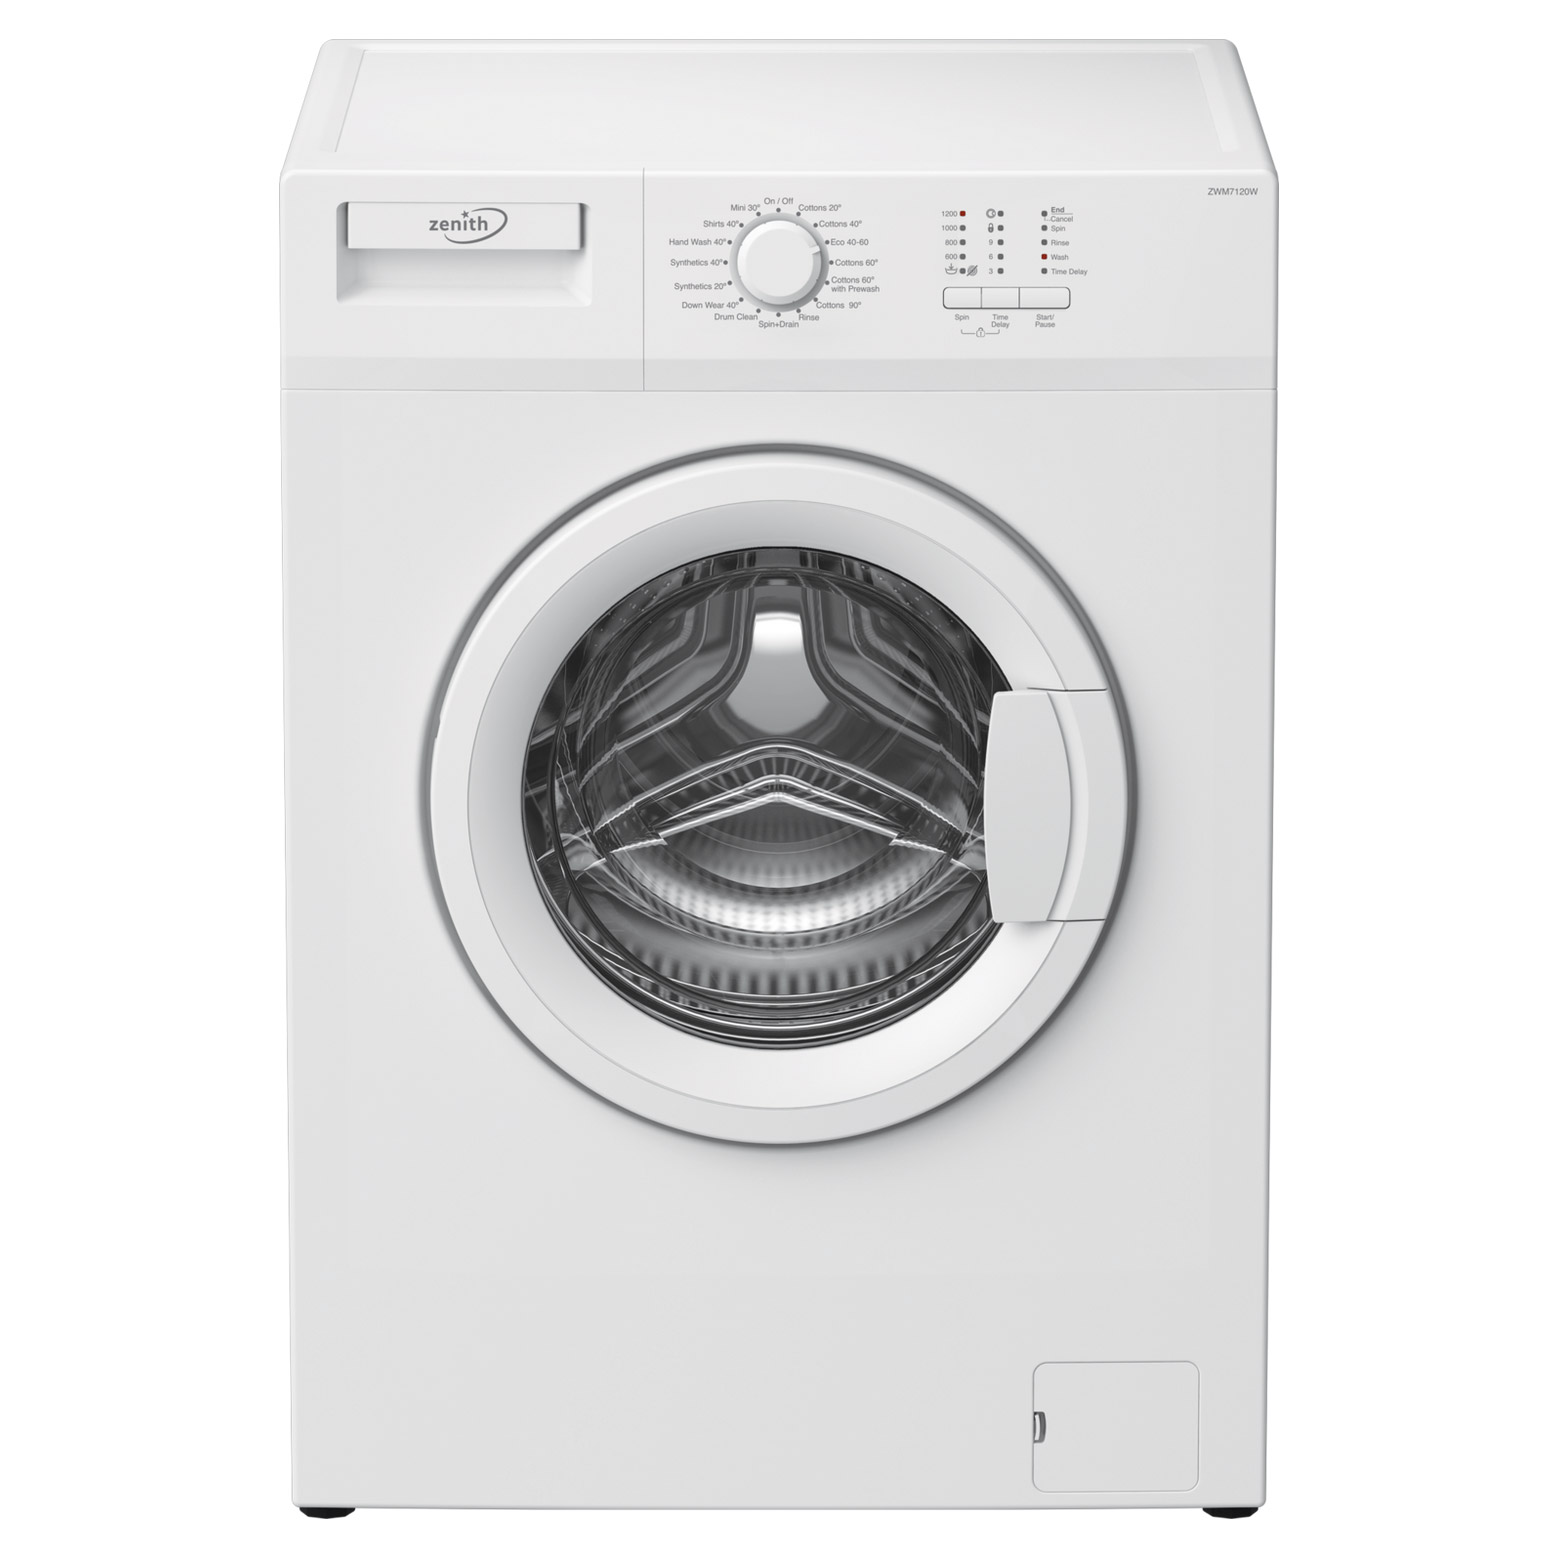 Photos - Washing Machine ZENITH ZWM7120W  in White 1200rpm 7Kg D Rated 